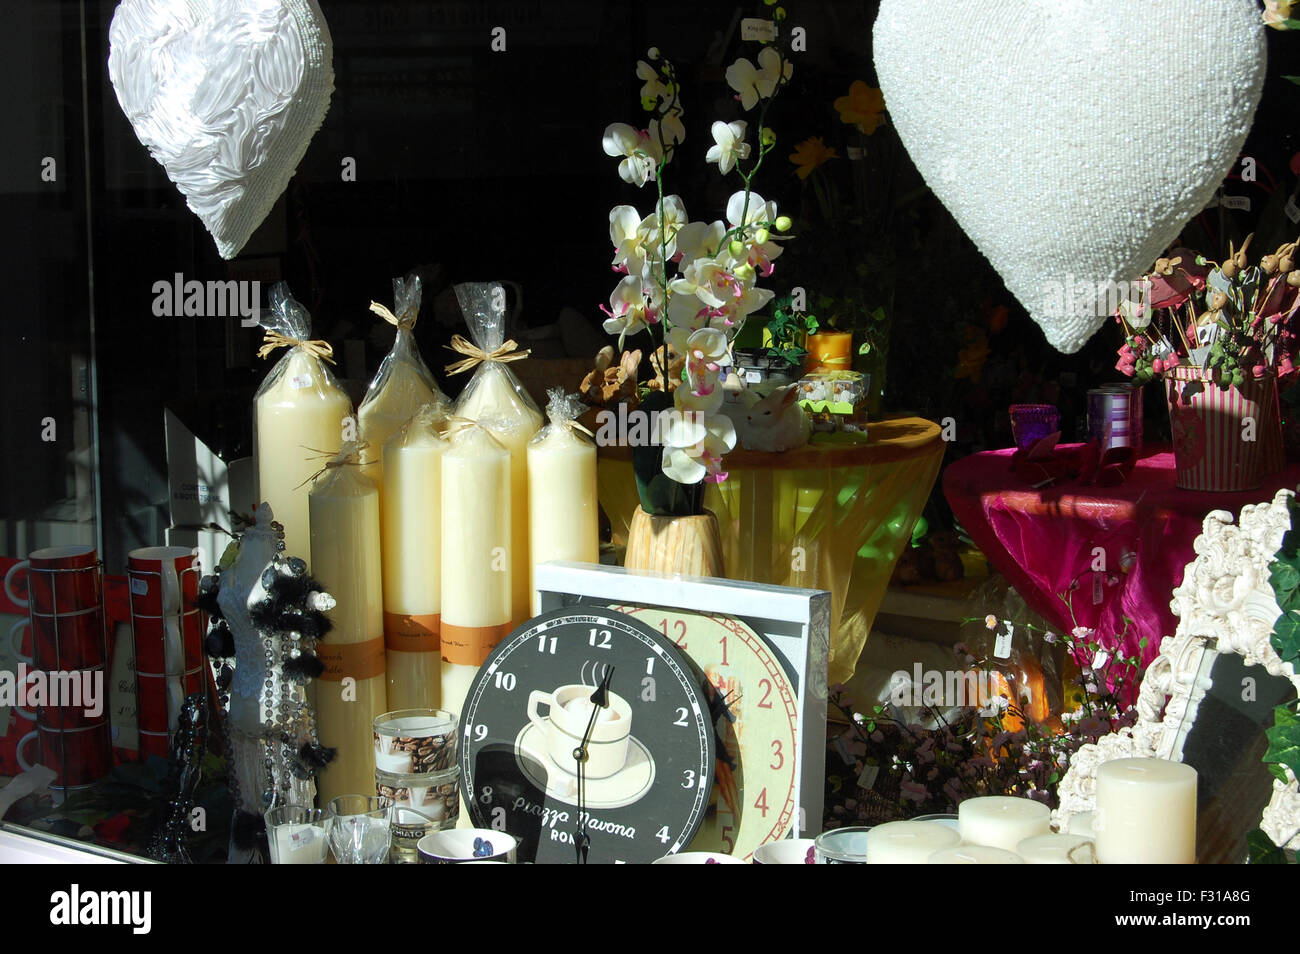 Kerzen, Uhren und andere Gegenstände in einem Schaufenster in Bad Tölz in  Bayern, Deutschland Stockfotografie - Alamy